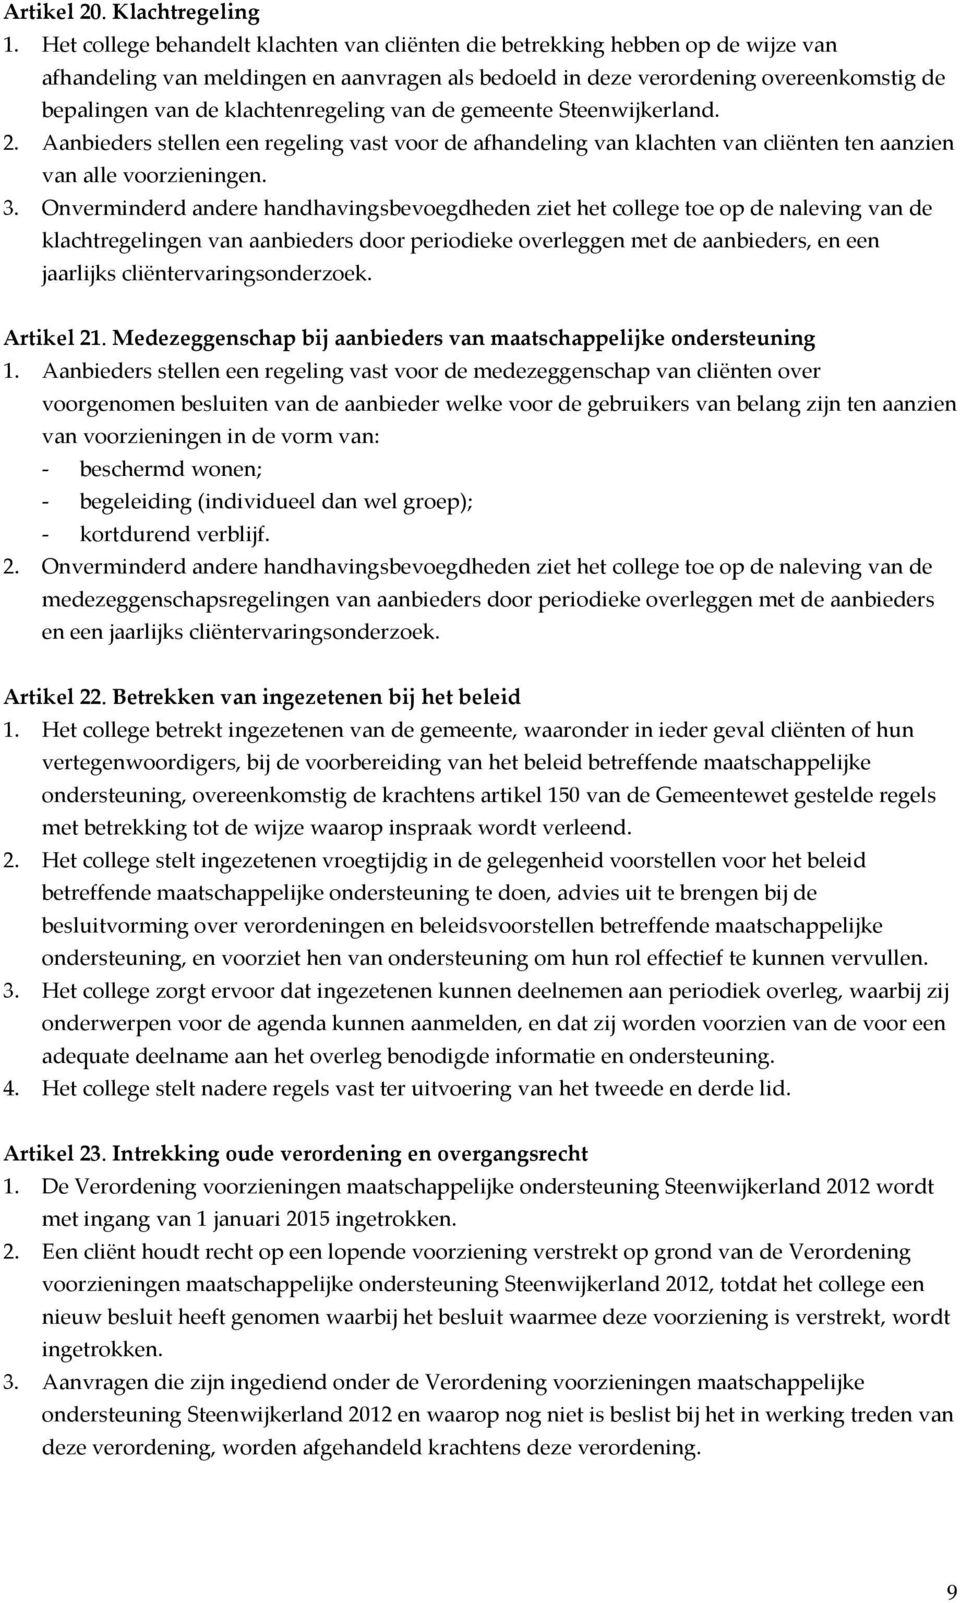 klachtenregeling van de gemeente Steenwijkerland. 2. Aanbieders stellen een regeling vast voor de afhandeling van klachten van cliënten ten aanzien van alle voorzieningen. 3.